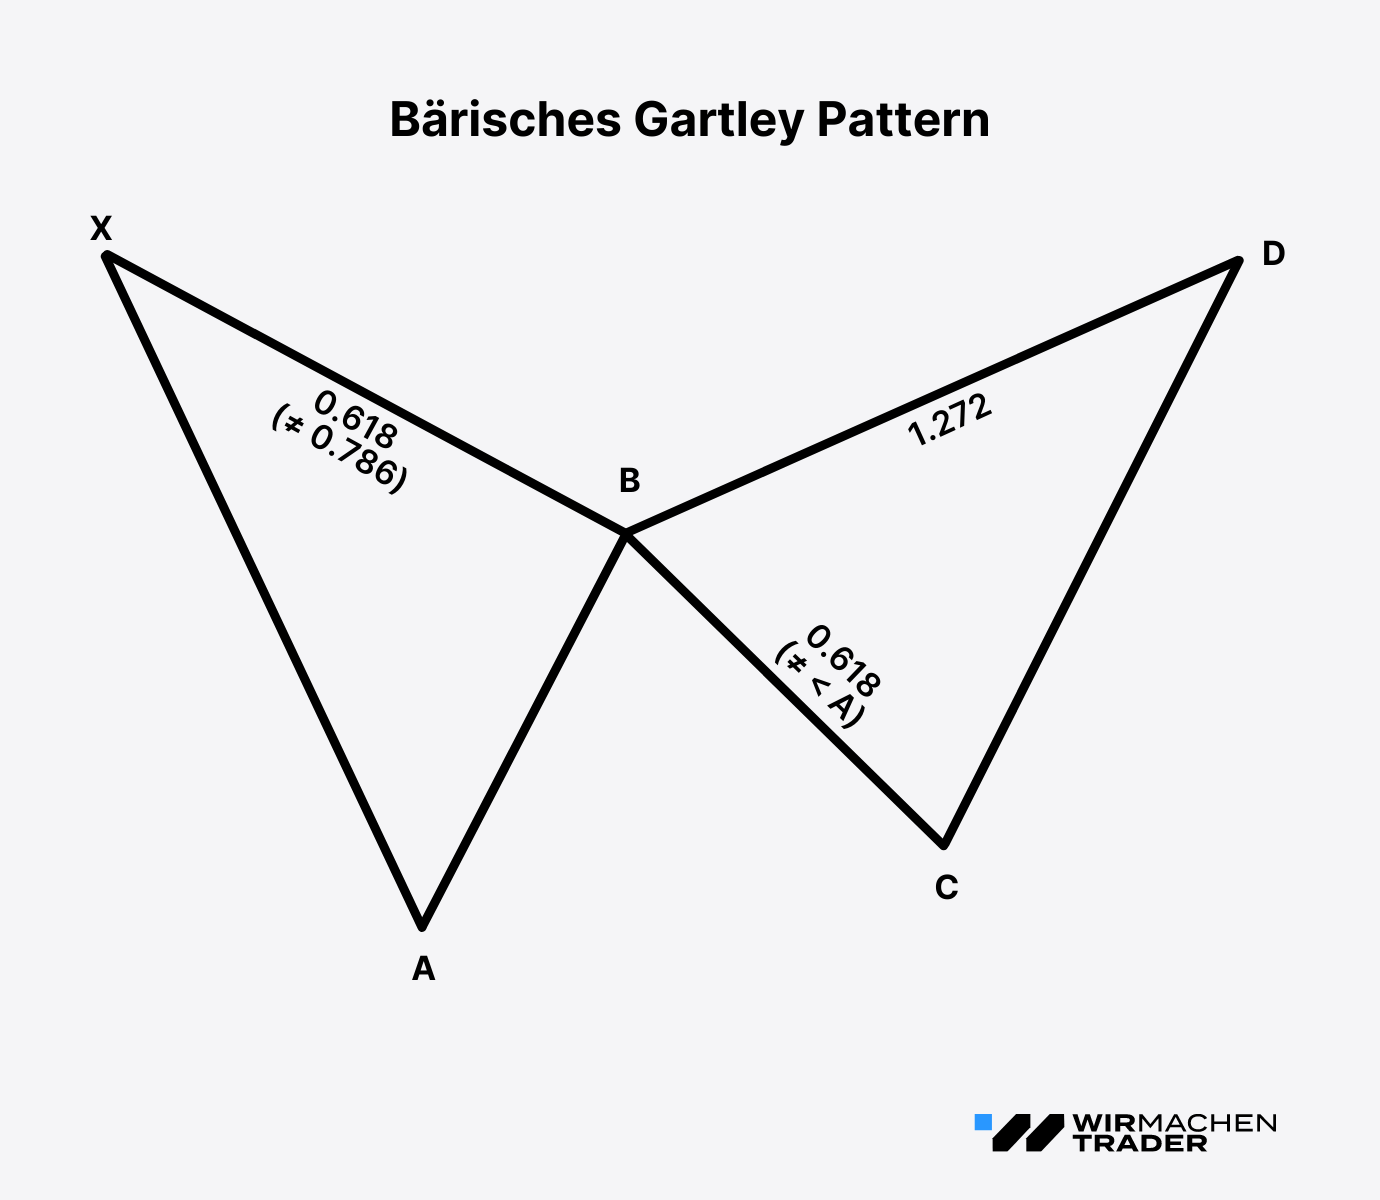 Das bärische Gartley Pattern mit den exakten Regeln